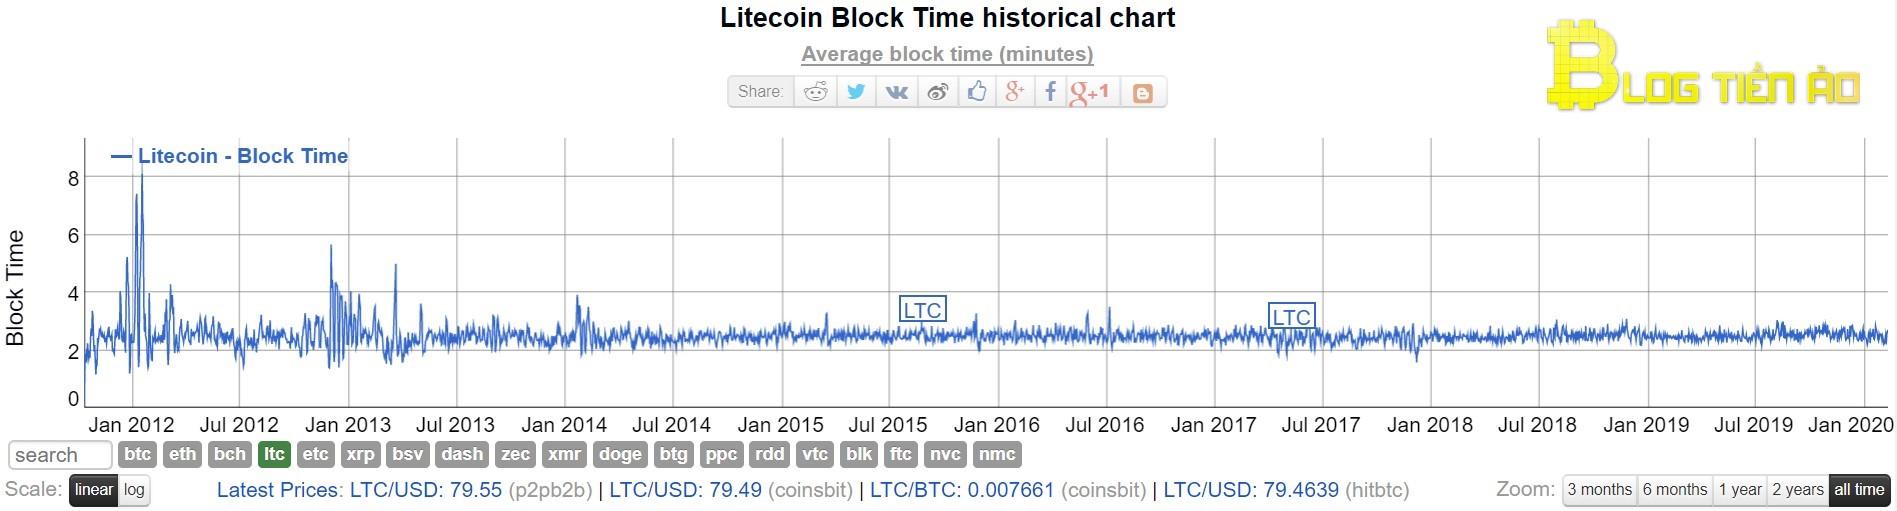 เวลาสร้างบล็อกของ Litecoin